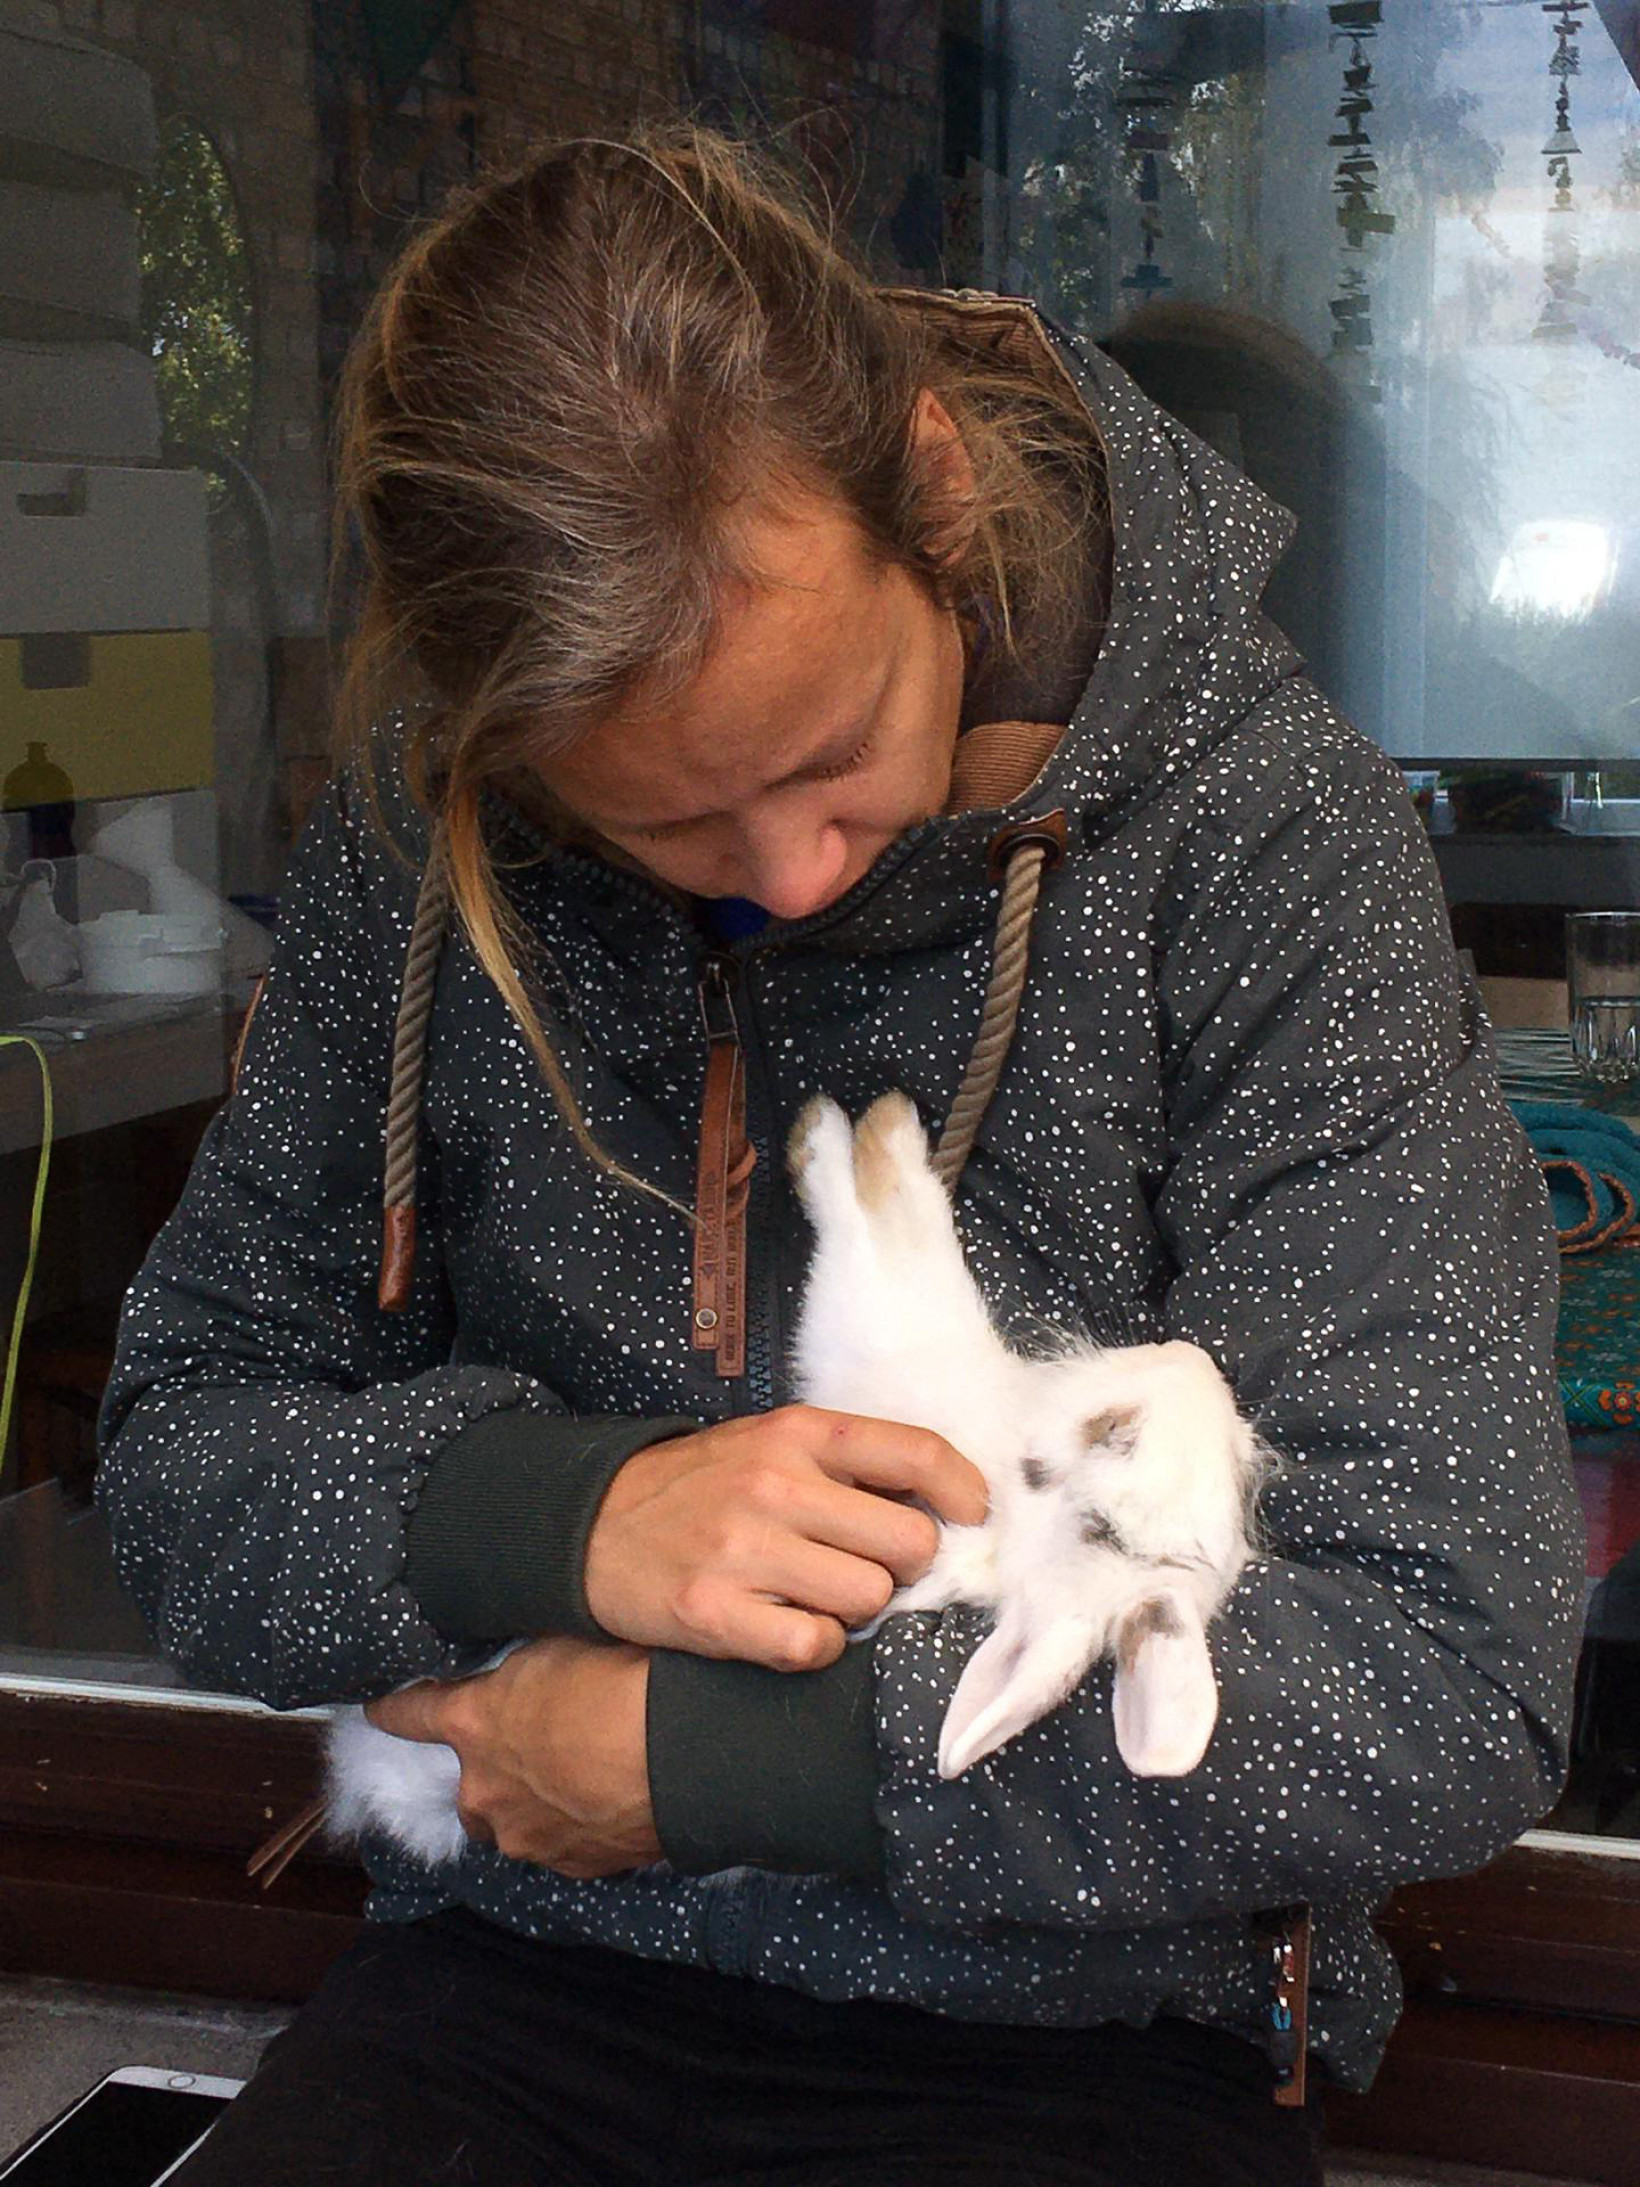 Marilekke neemt afscheid van haar konijn Nibus